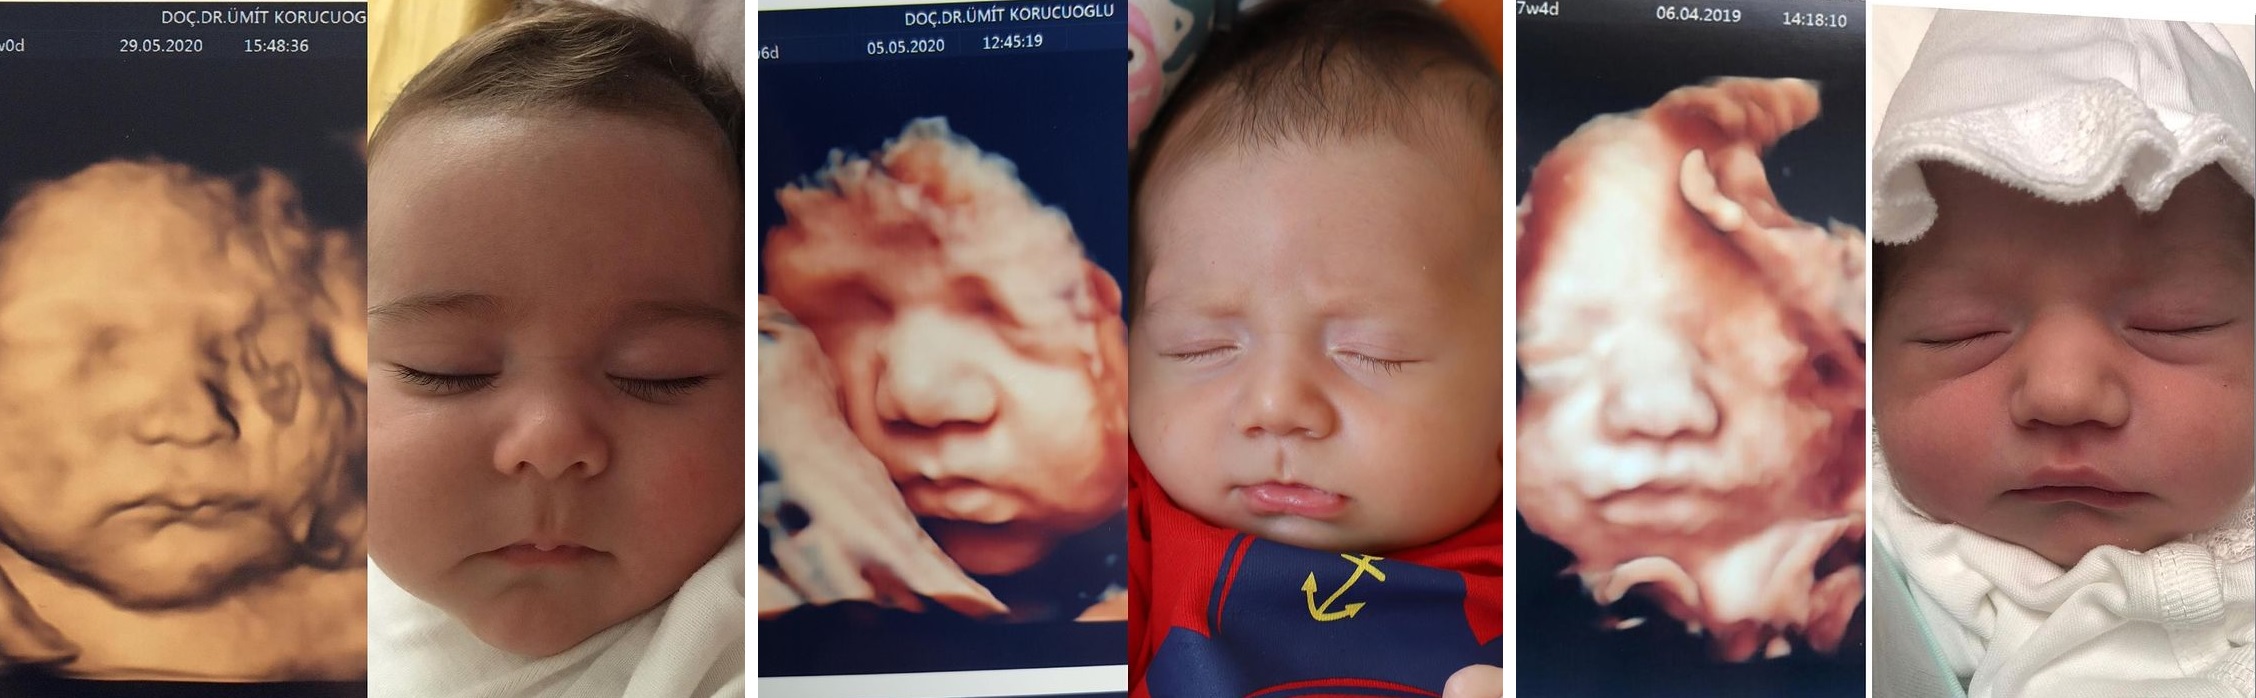 ecografii 4d cu bebelusi in uterul mamei si dupa ce s-au nascut